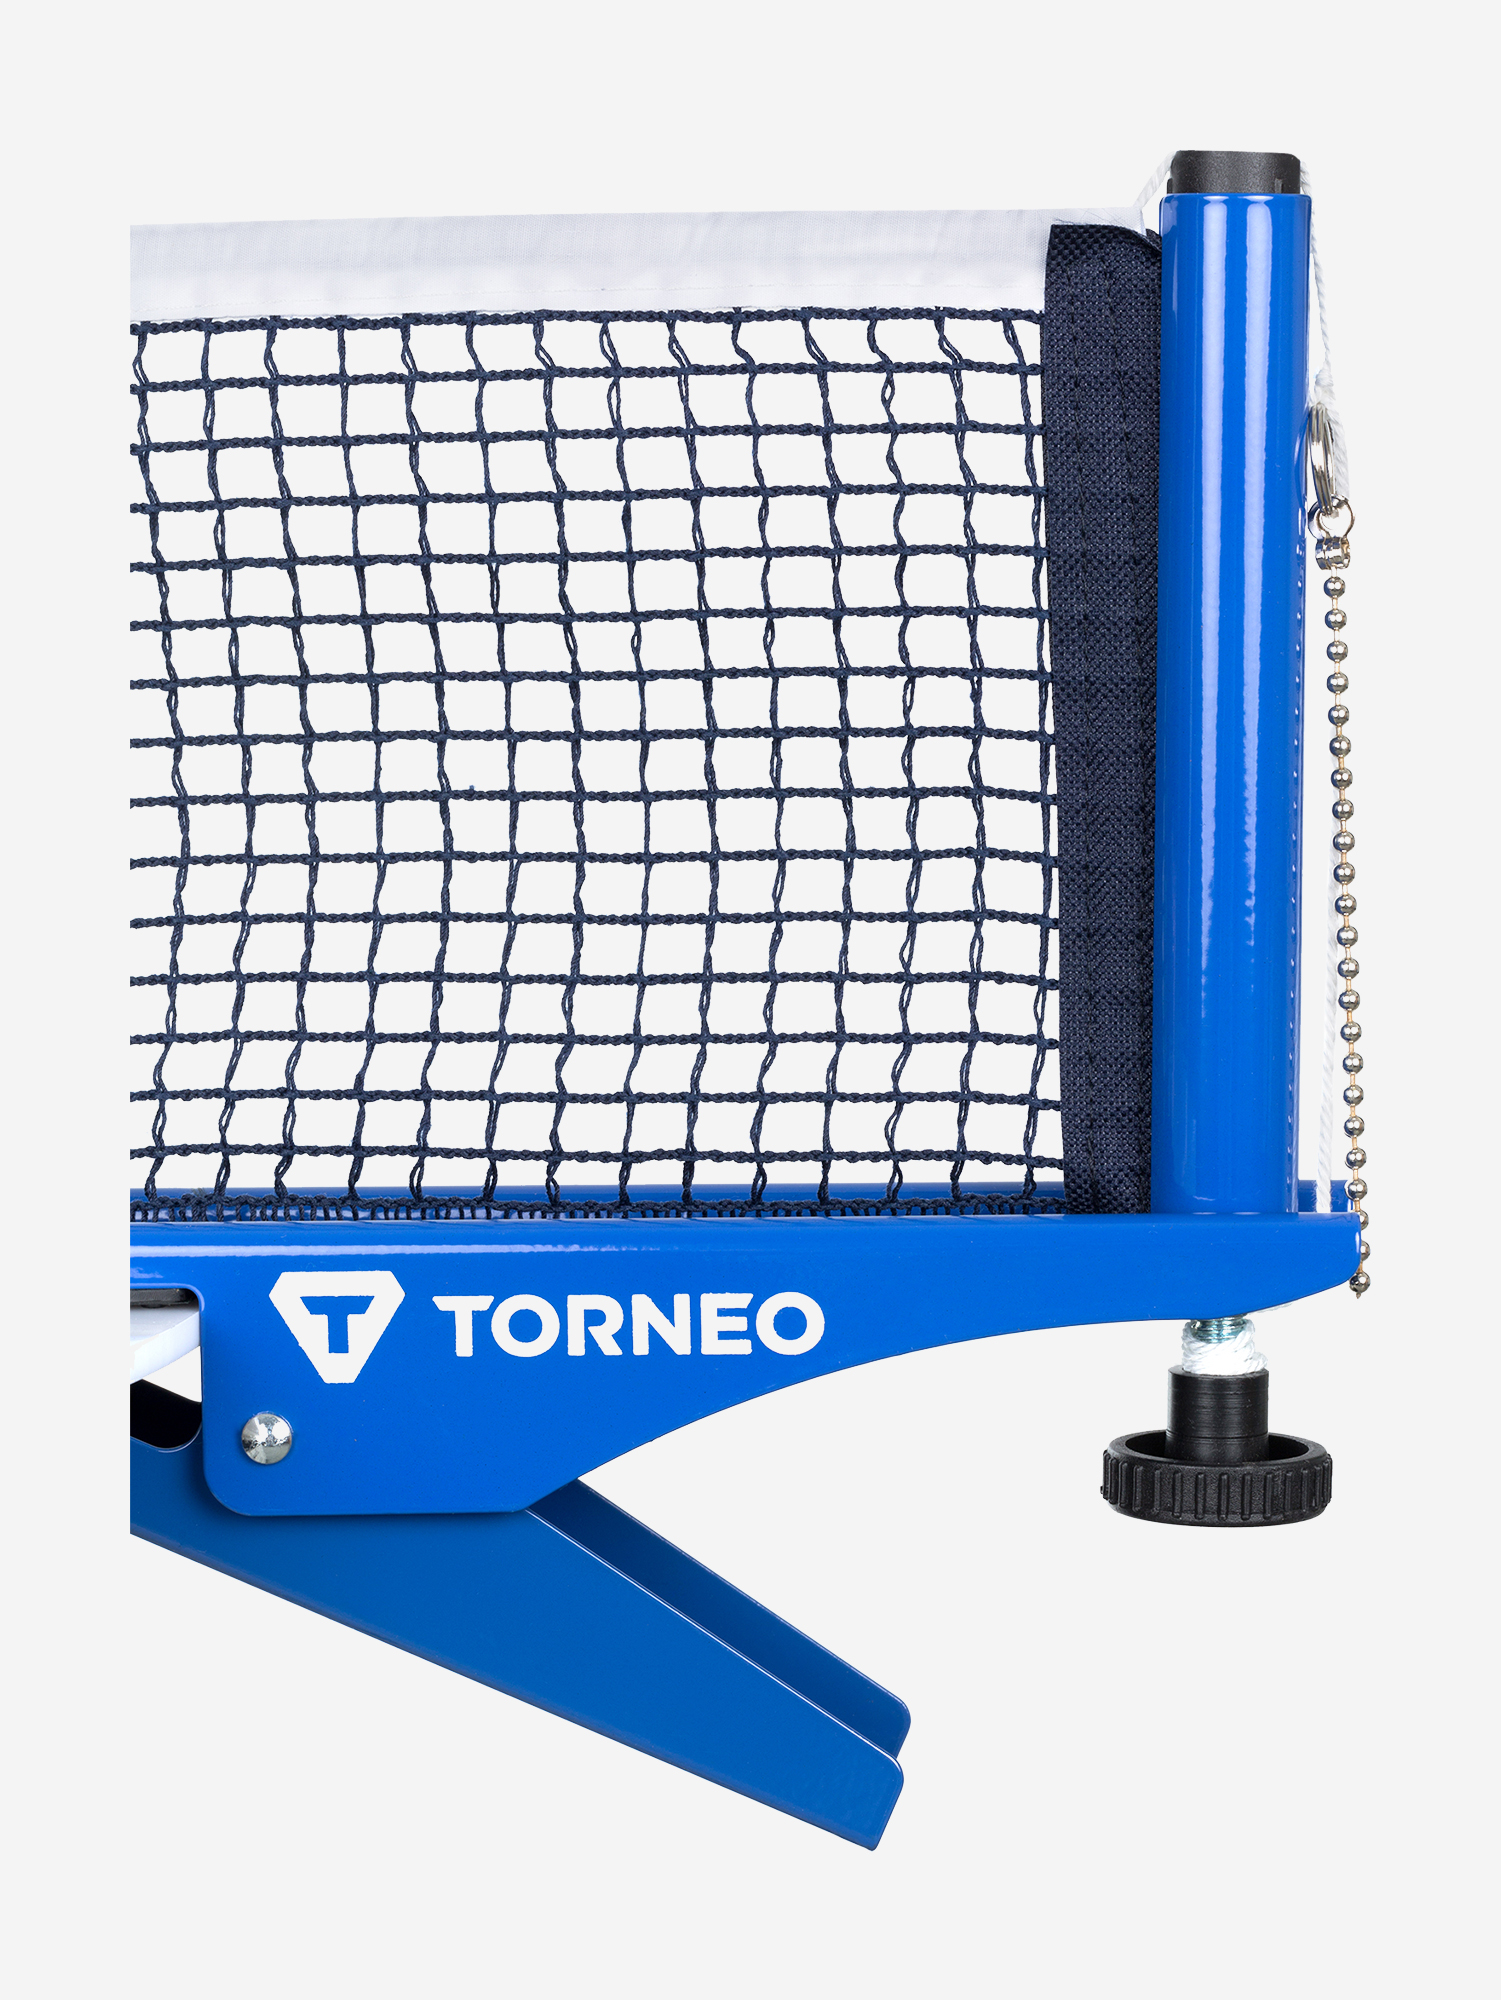 Спортмастер сетка. Сетка для настольного тенниса с креплением Torneo. Сетка для настольного тенниса с креплением Torneo артикул ti-ns3000. Сетка для настольного тенниса Торнео. Теннисный стол Torneo сетка.